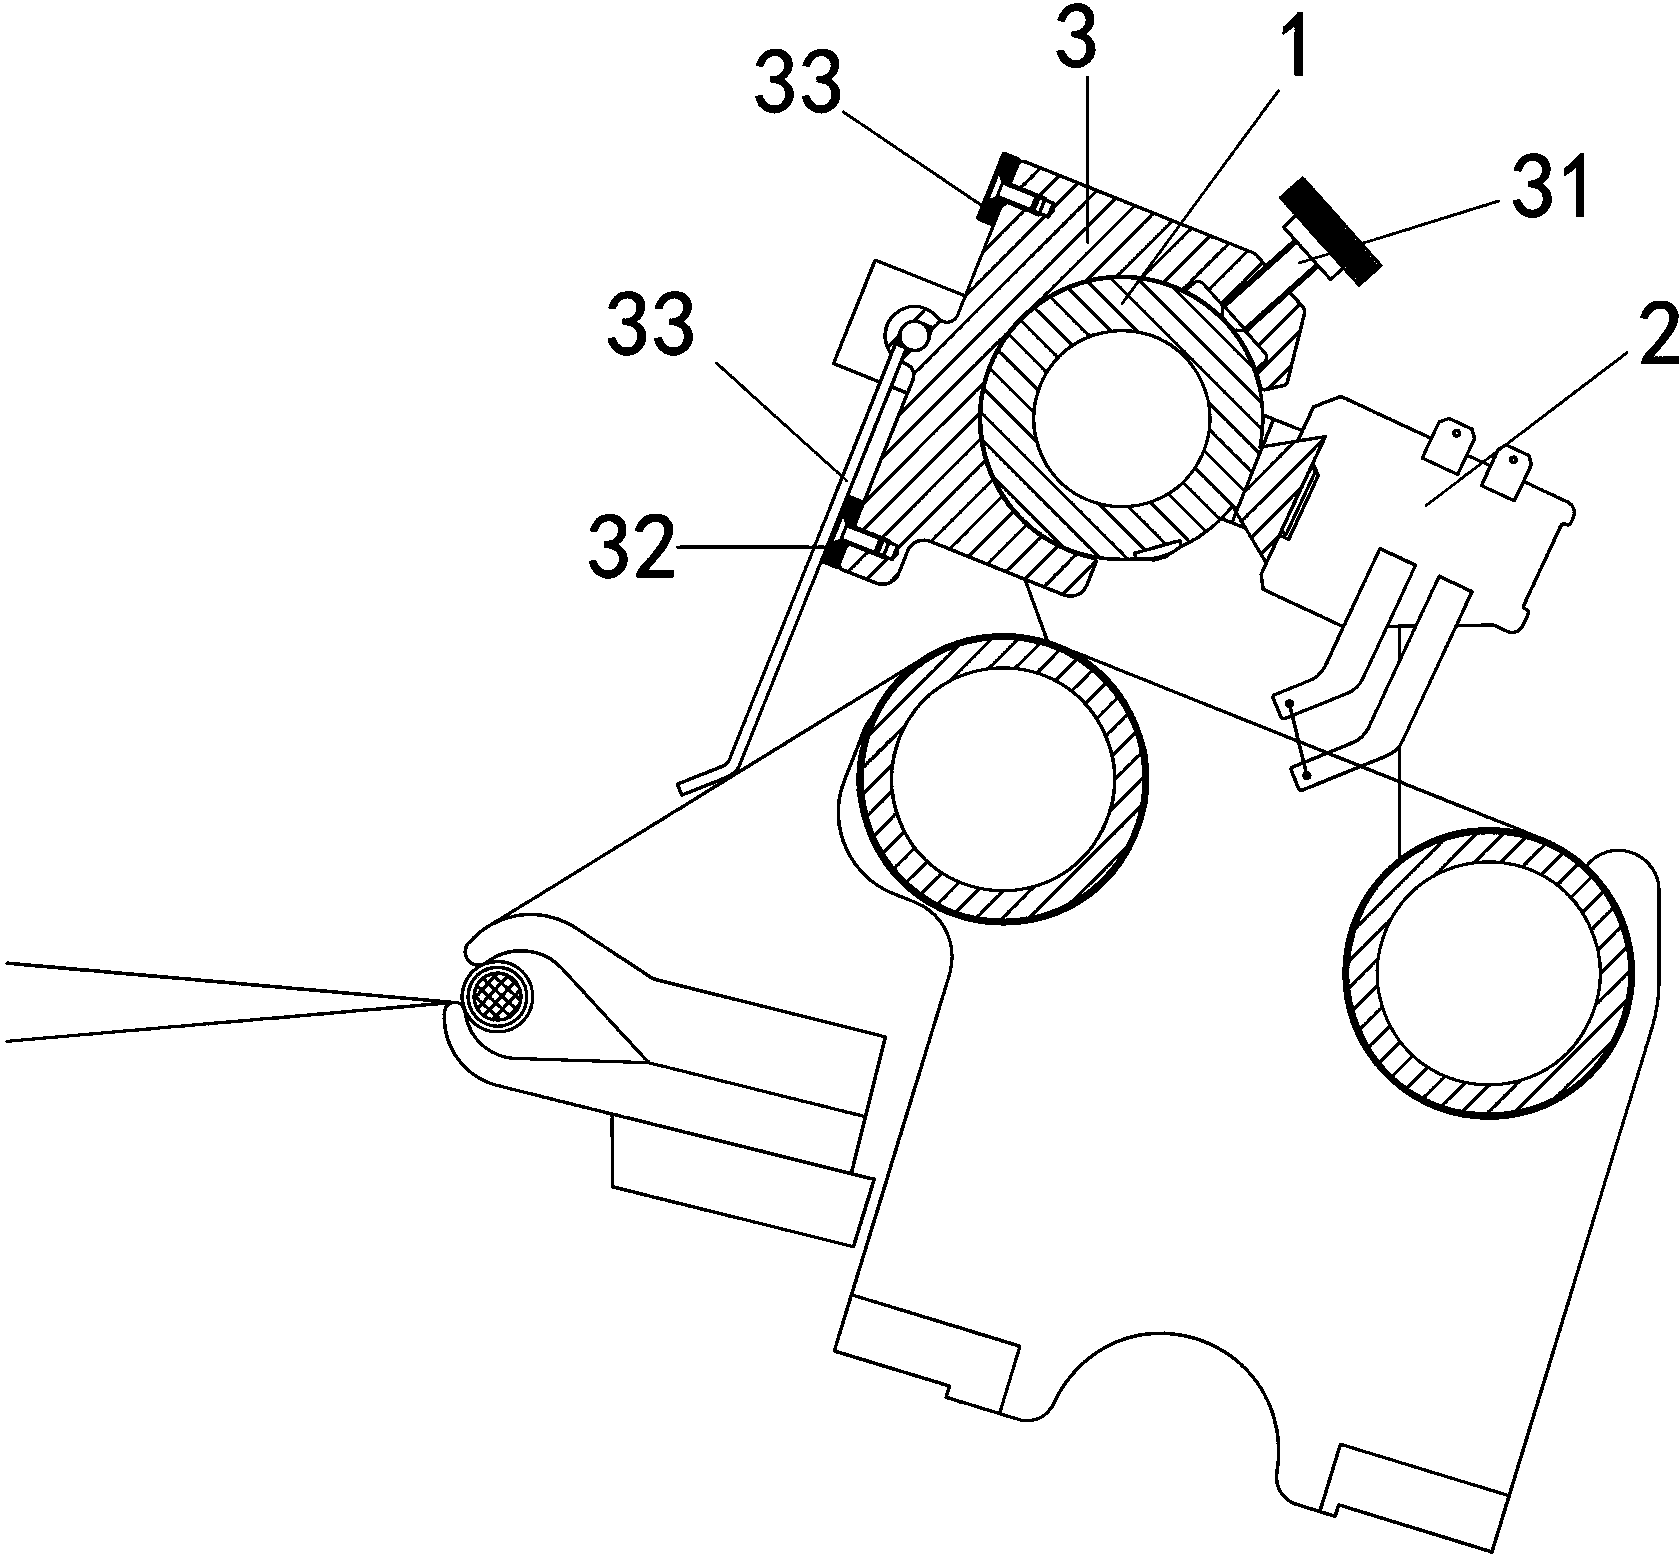 Trademark cutting mechanism